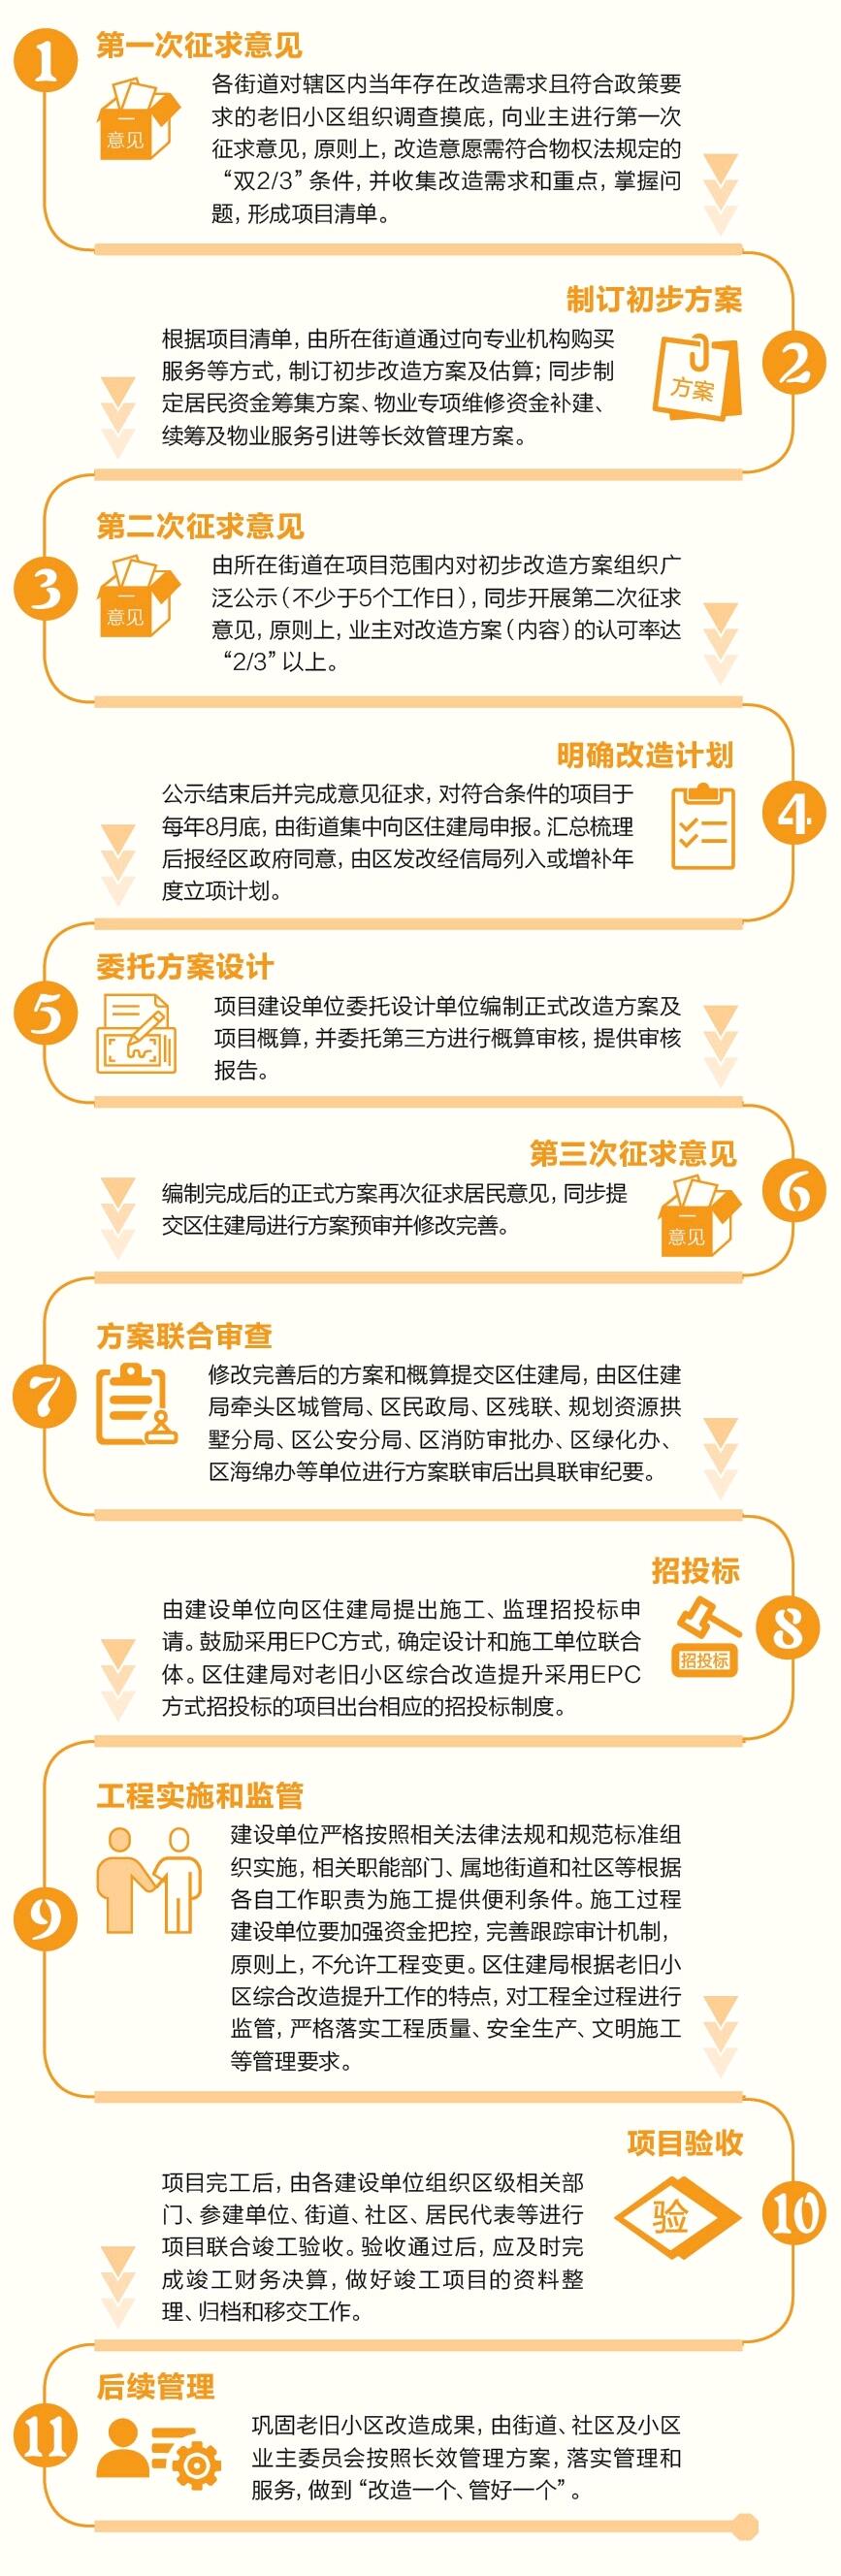 杭州拱墅区推出老旧小区综合改造提升三年行动计划-中国网地产